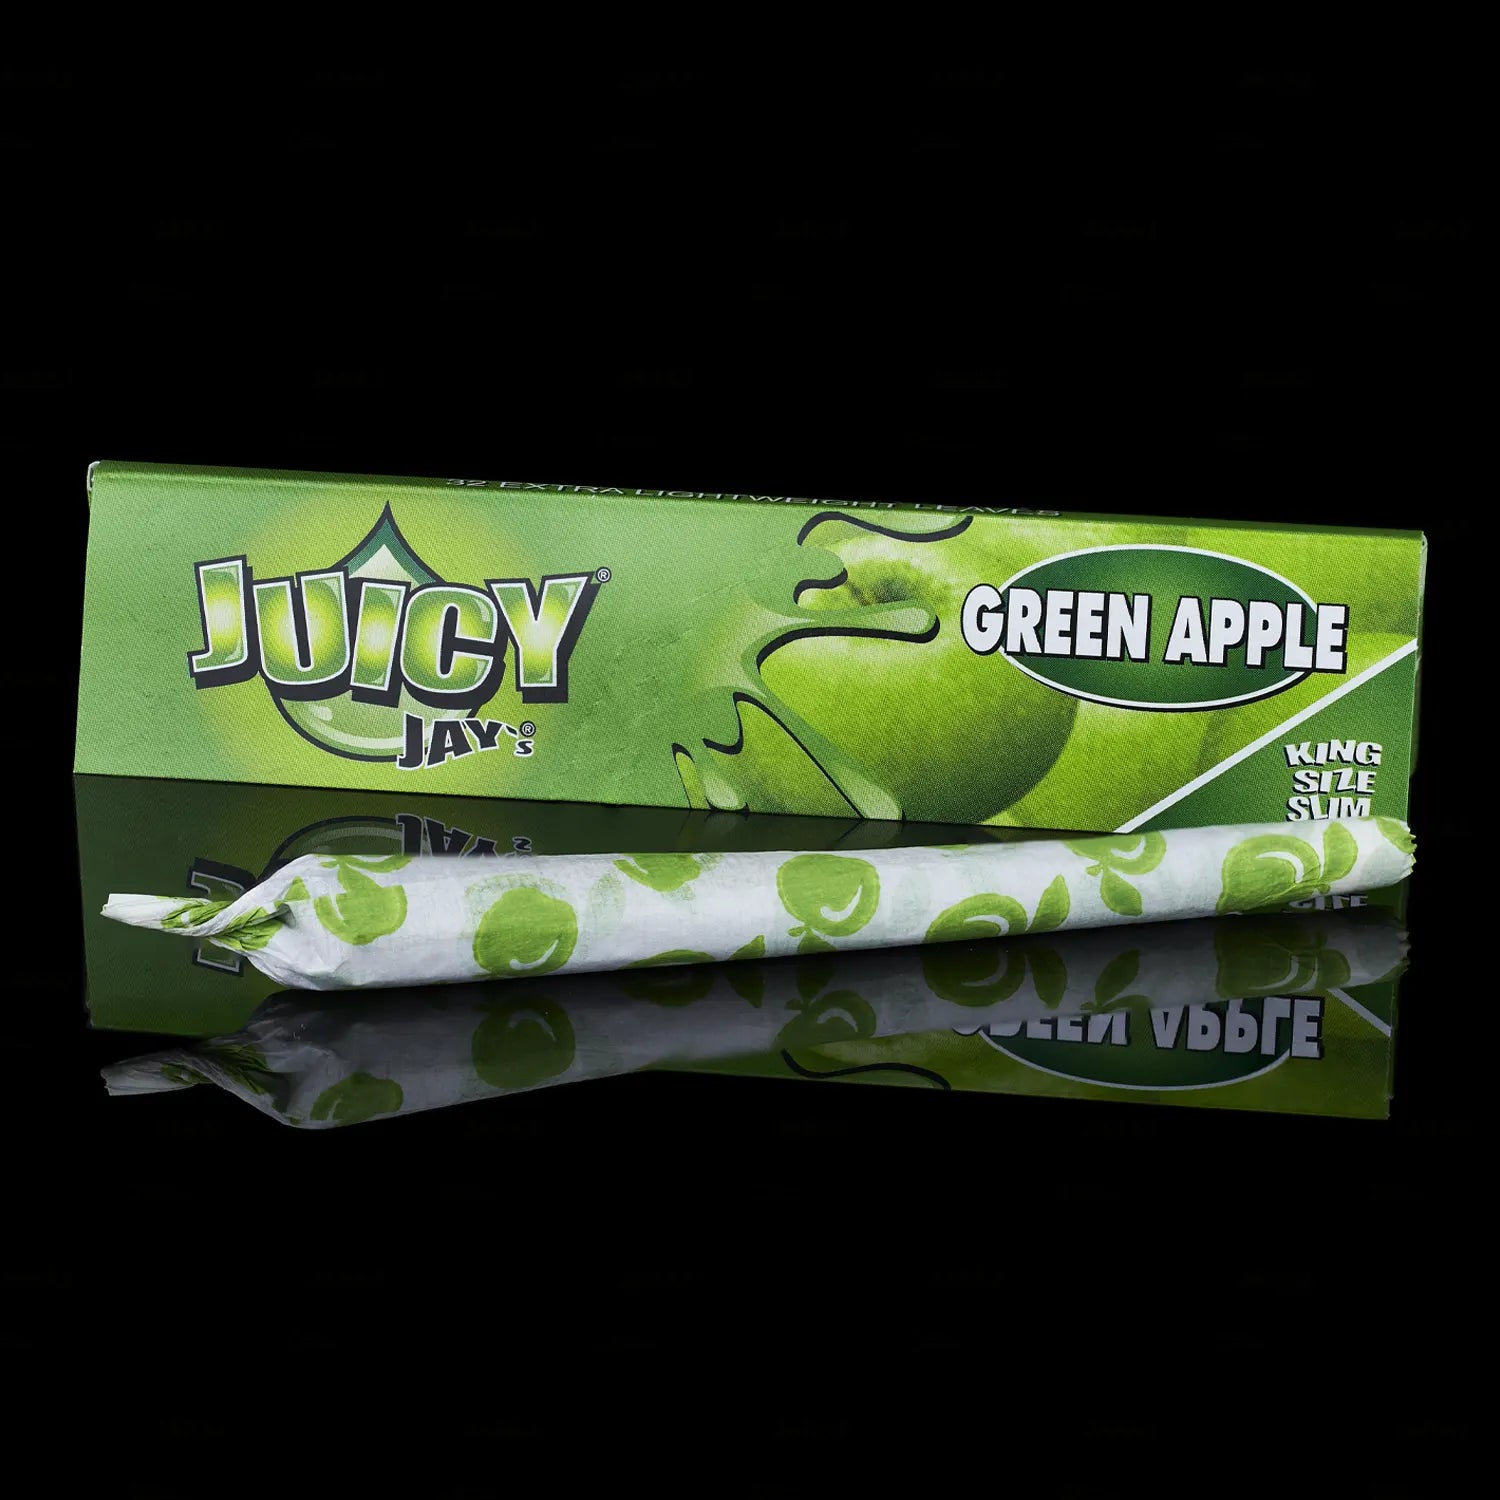 Juicy - Green Apple - King Size